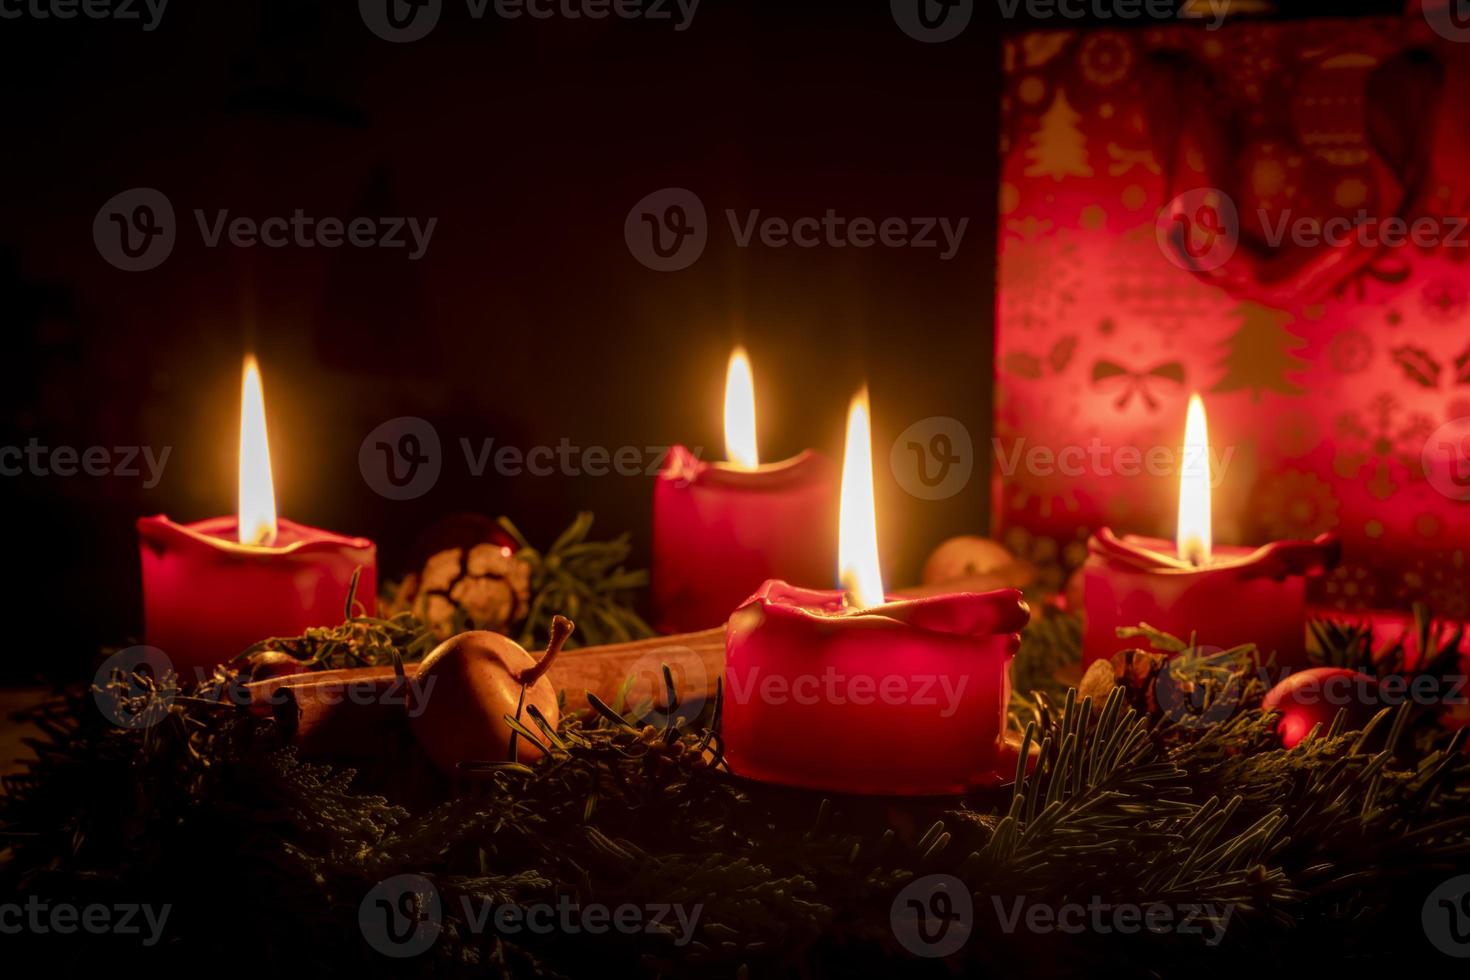 couronne de l'Avent décorée de branches de sapin avec des bougies rouges allumées photo